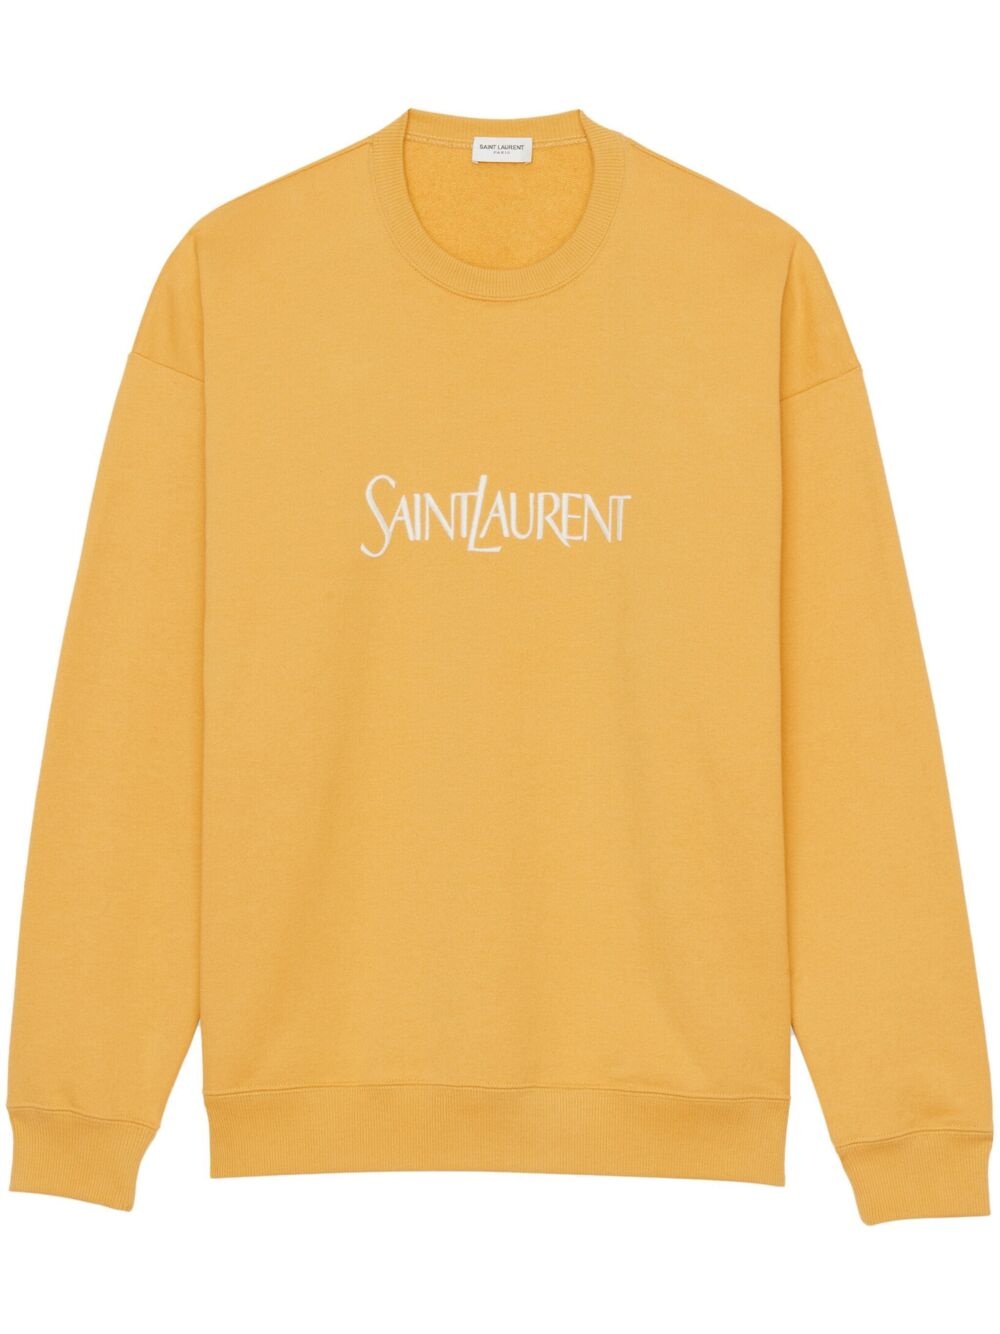 Saint laurent sweatshirt - 1